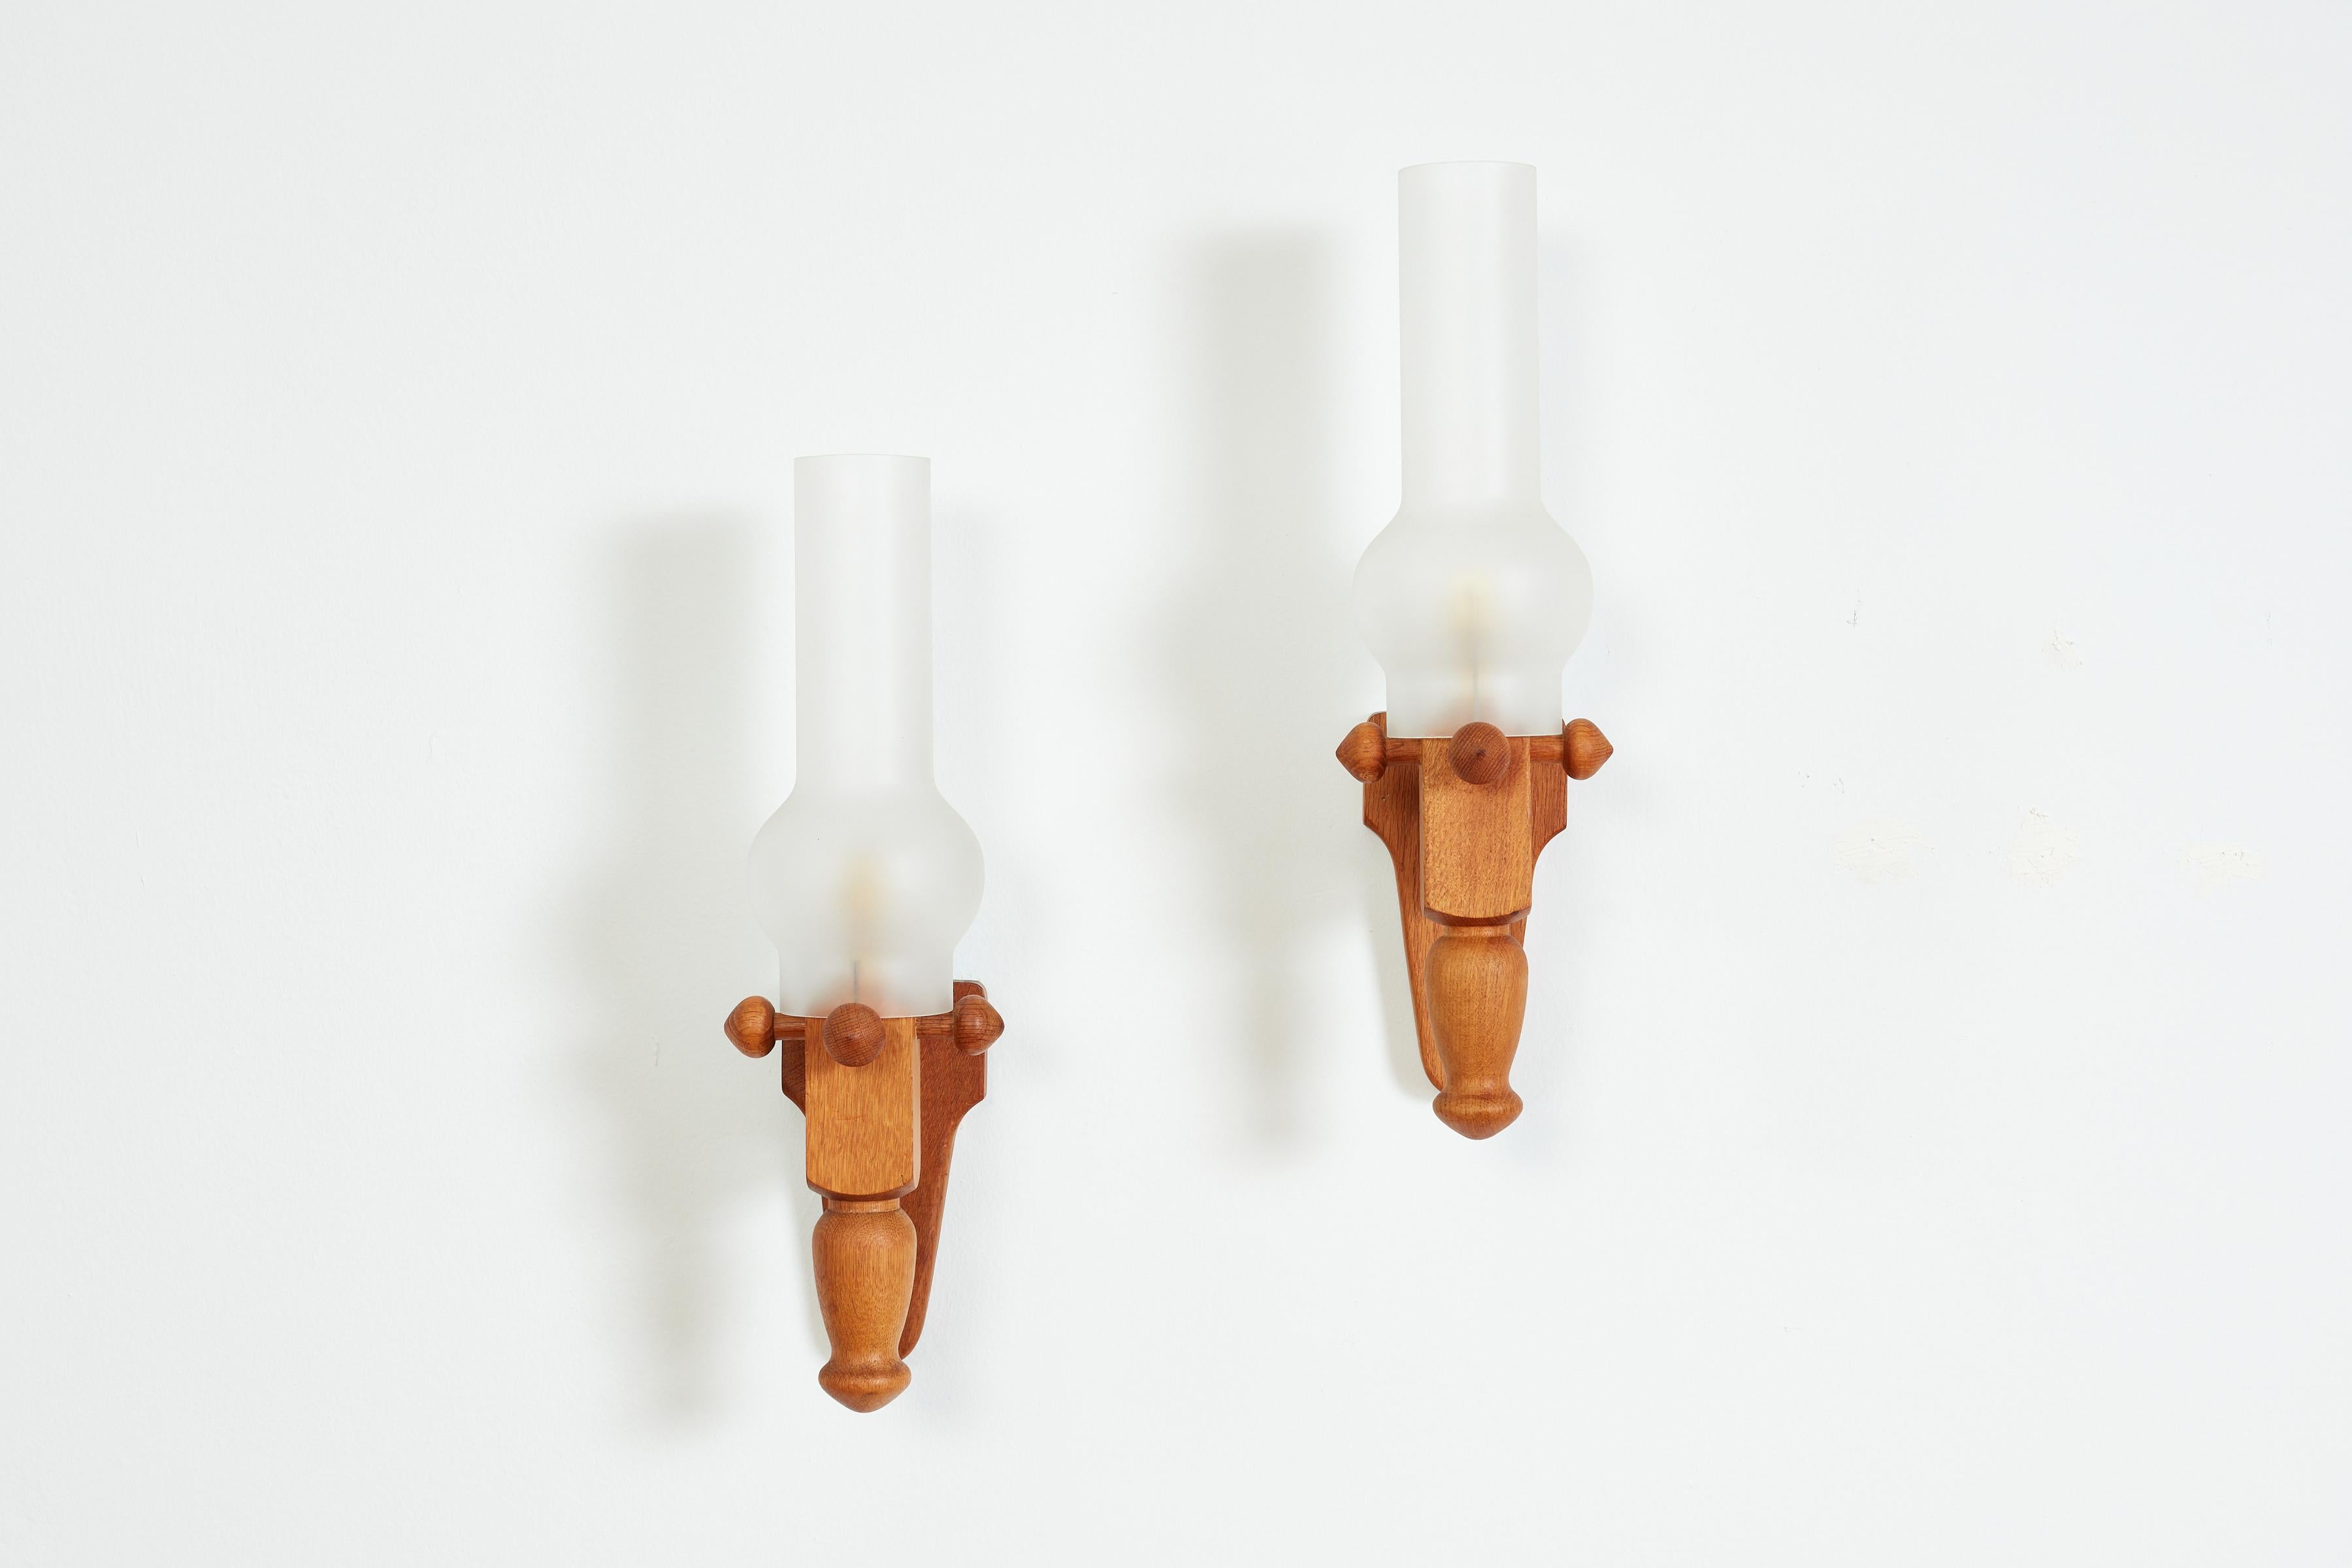 Paar Fackellampen von Guillerme et Chambron - Frankreich, ca. 1940er Jahre

Eichenholzrahmen mit originalen Orkan-Milchglasschirmen 

Neu verkabelt

